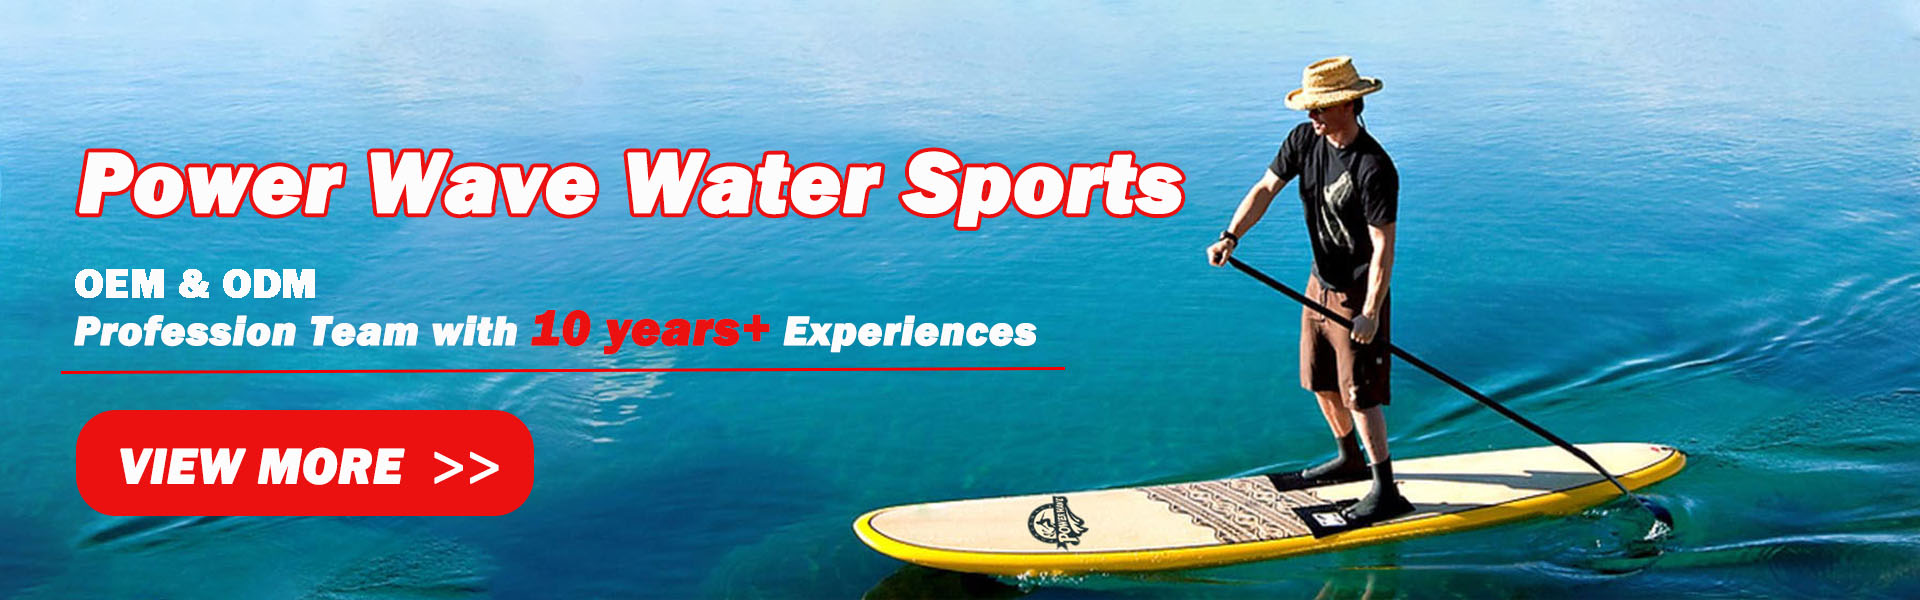 surffilauta, pehmeä lauta, sup,Power Wave Water Sports co.Ltd